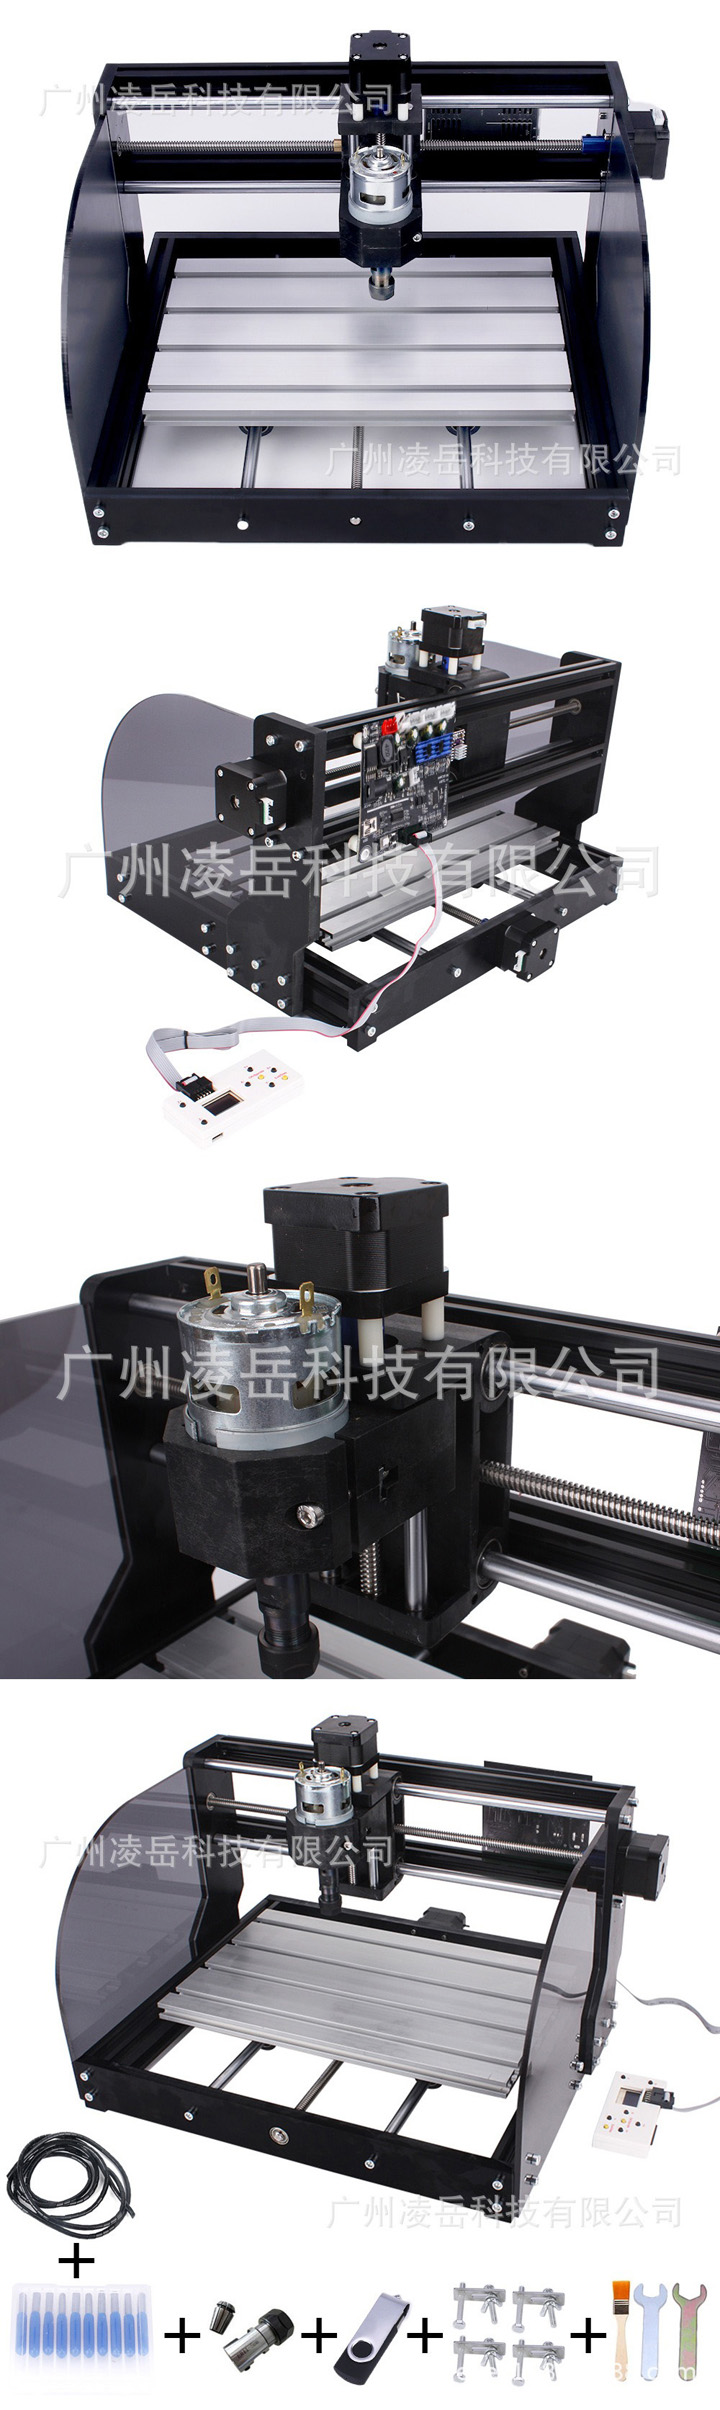 Machine de gravure laser pour métal / bois